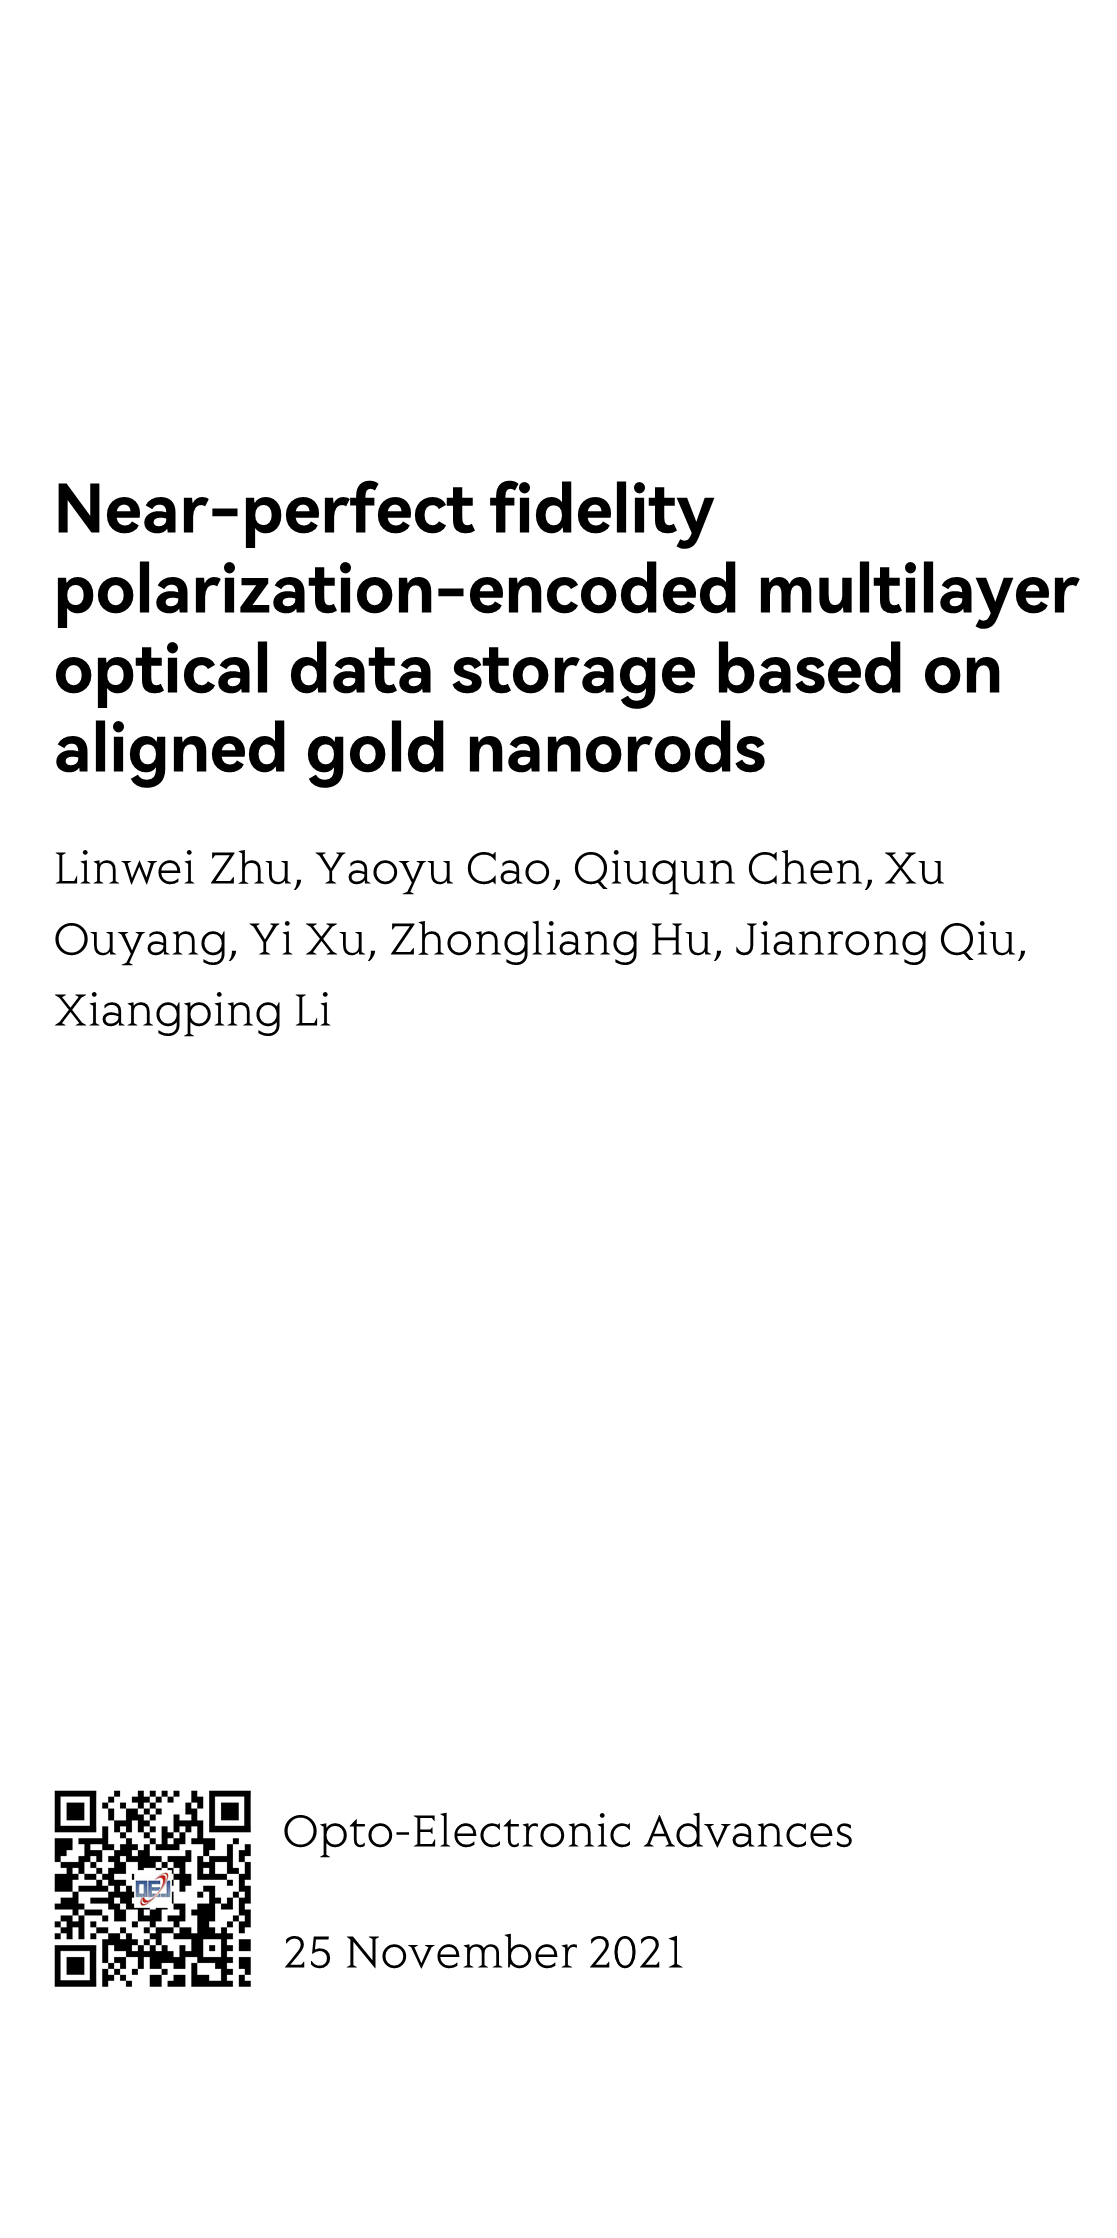 Near-perfect fidelity polarization-encoded multilayer optical data storage based on aligned gold nanorods_1